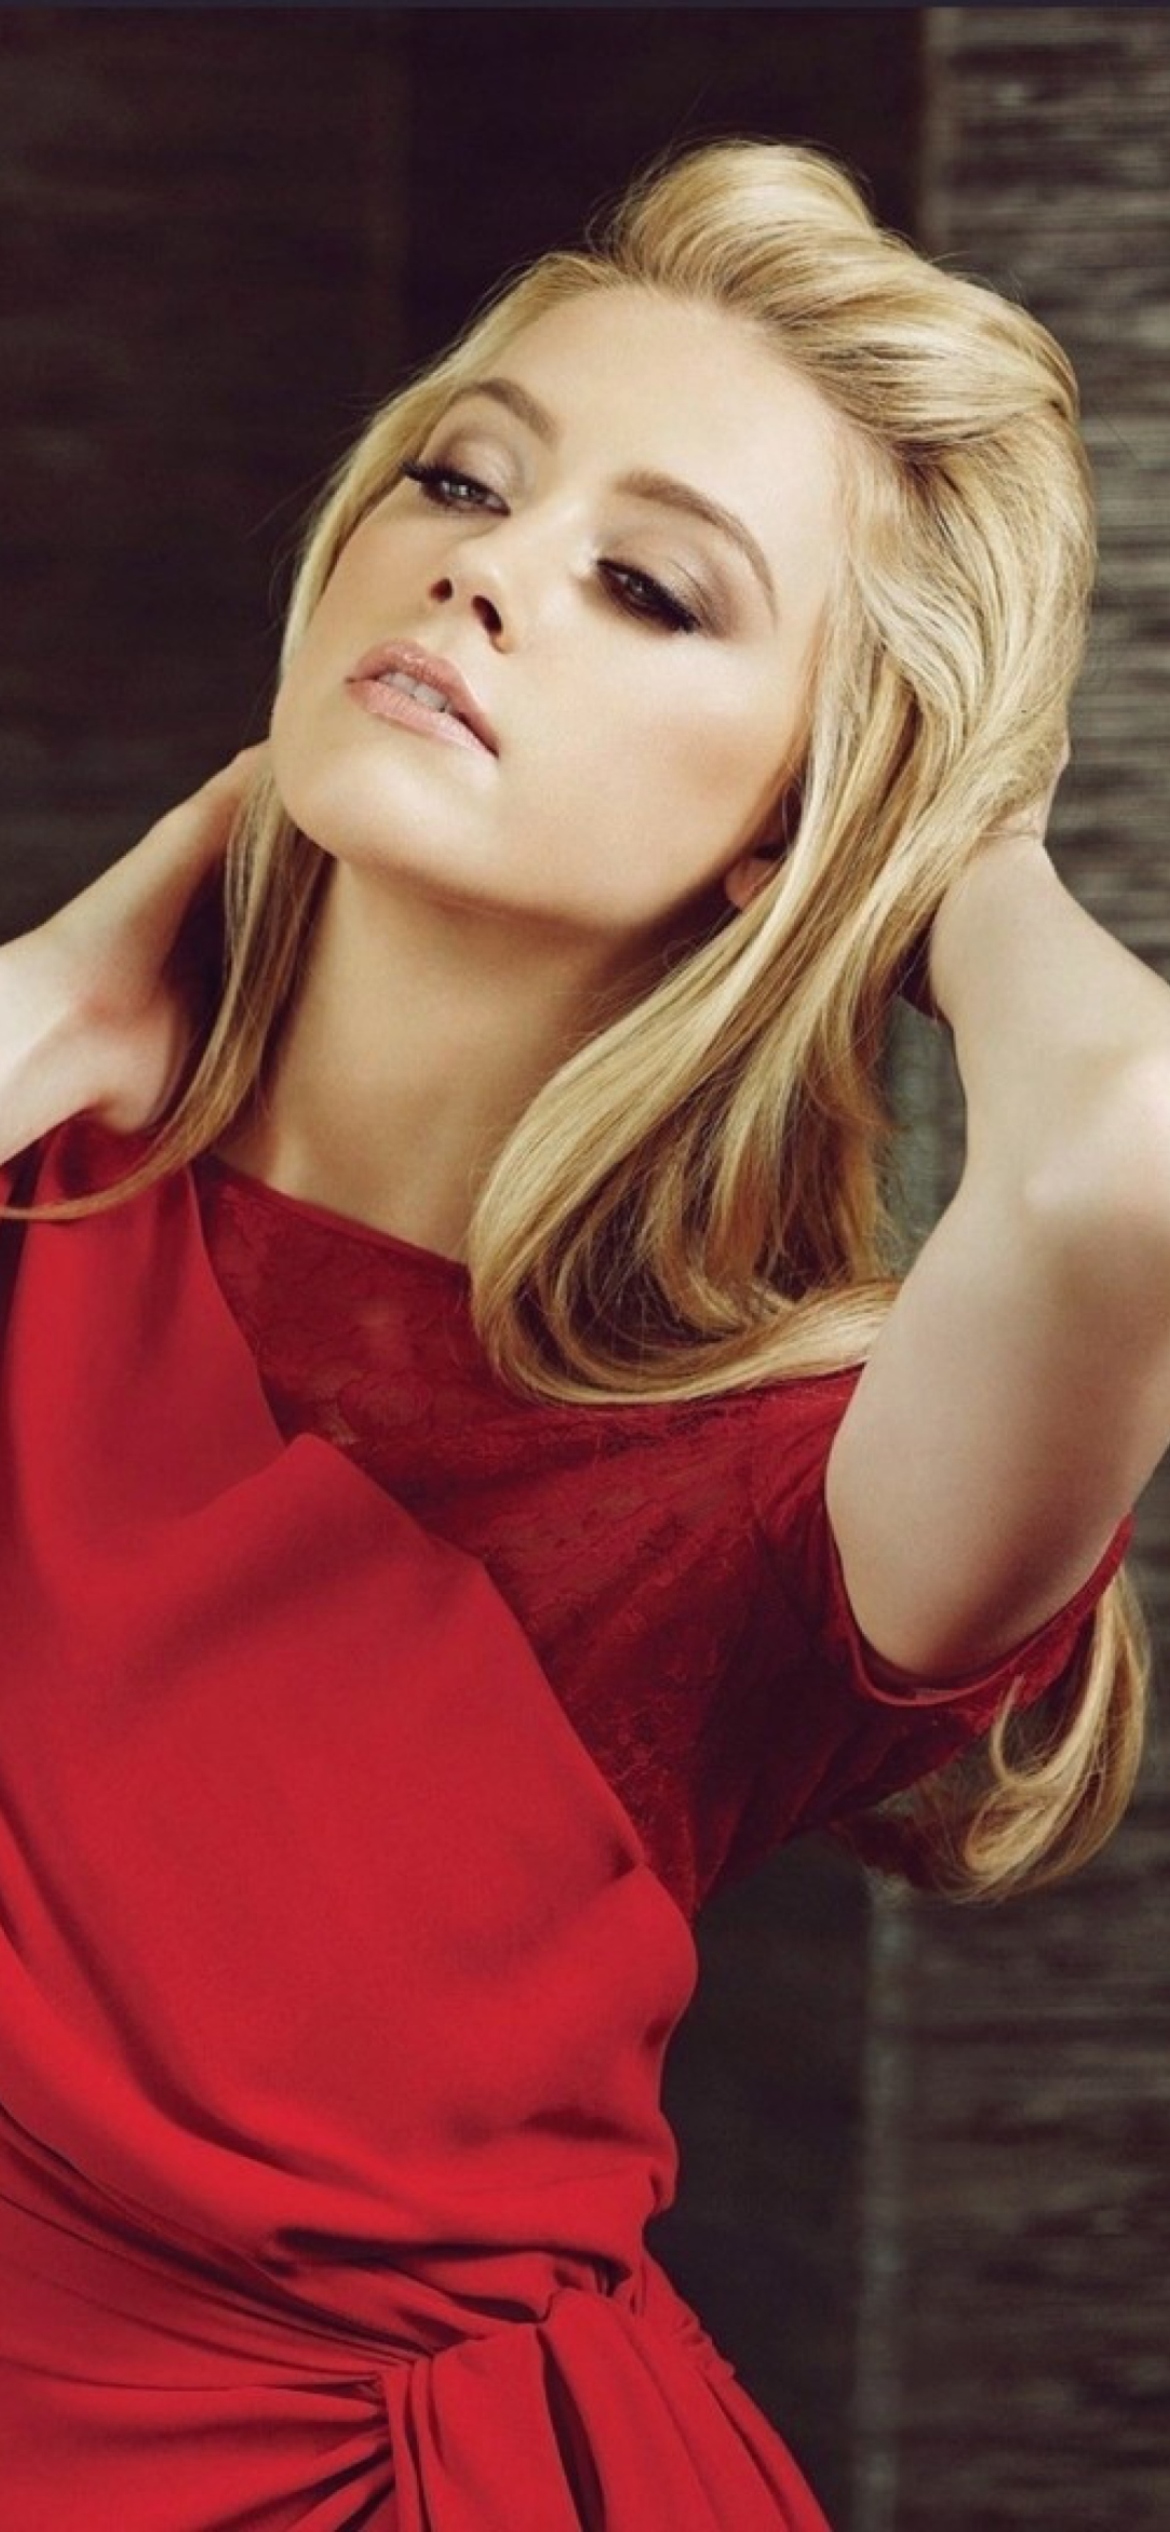 Blonde Model In Red Dress screenshot #1 1170x2532